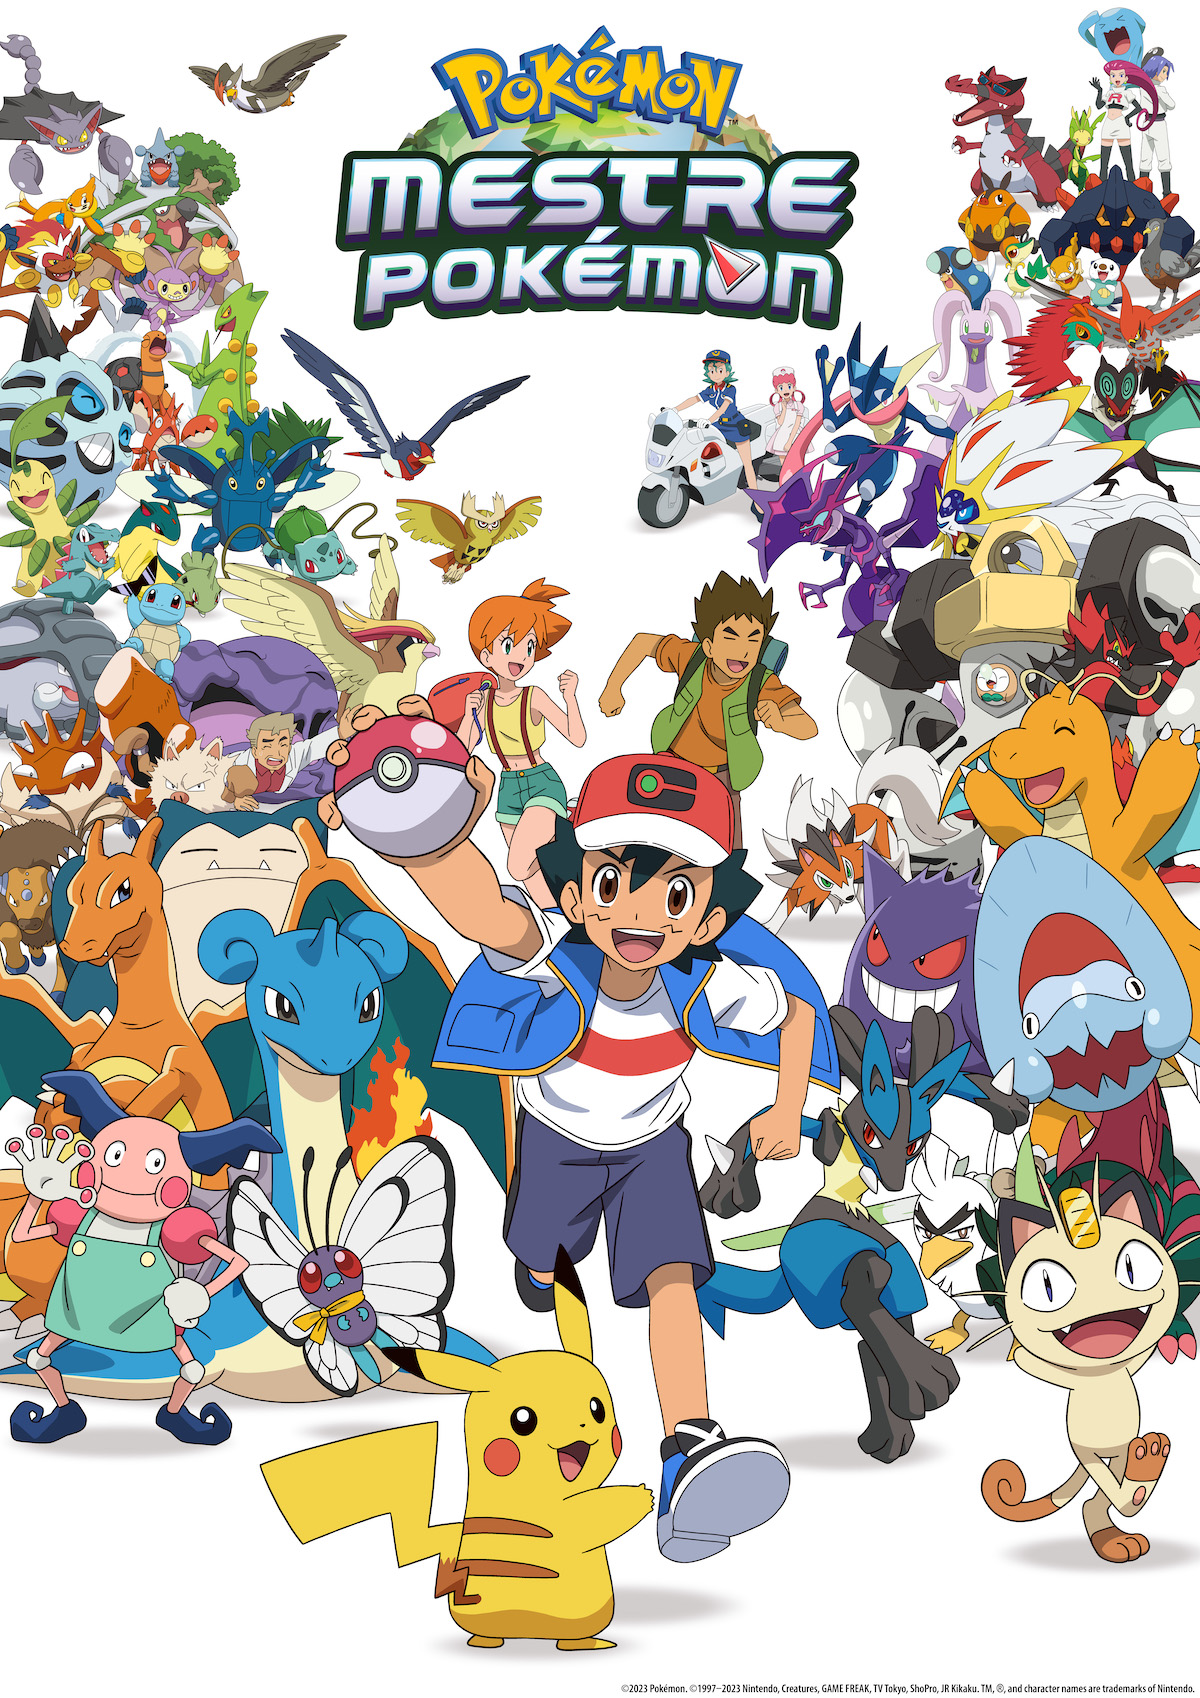 Mestre Pokémon: A Série' estreia dublado na Netflix, com episódio extra